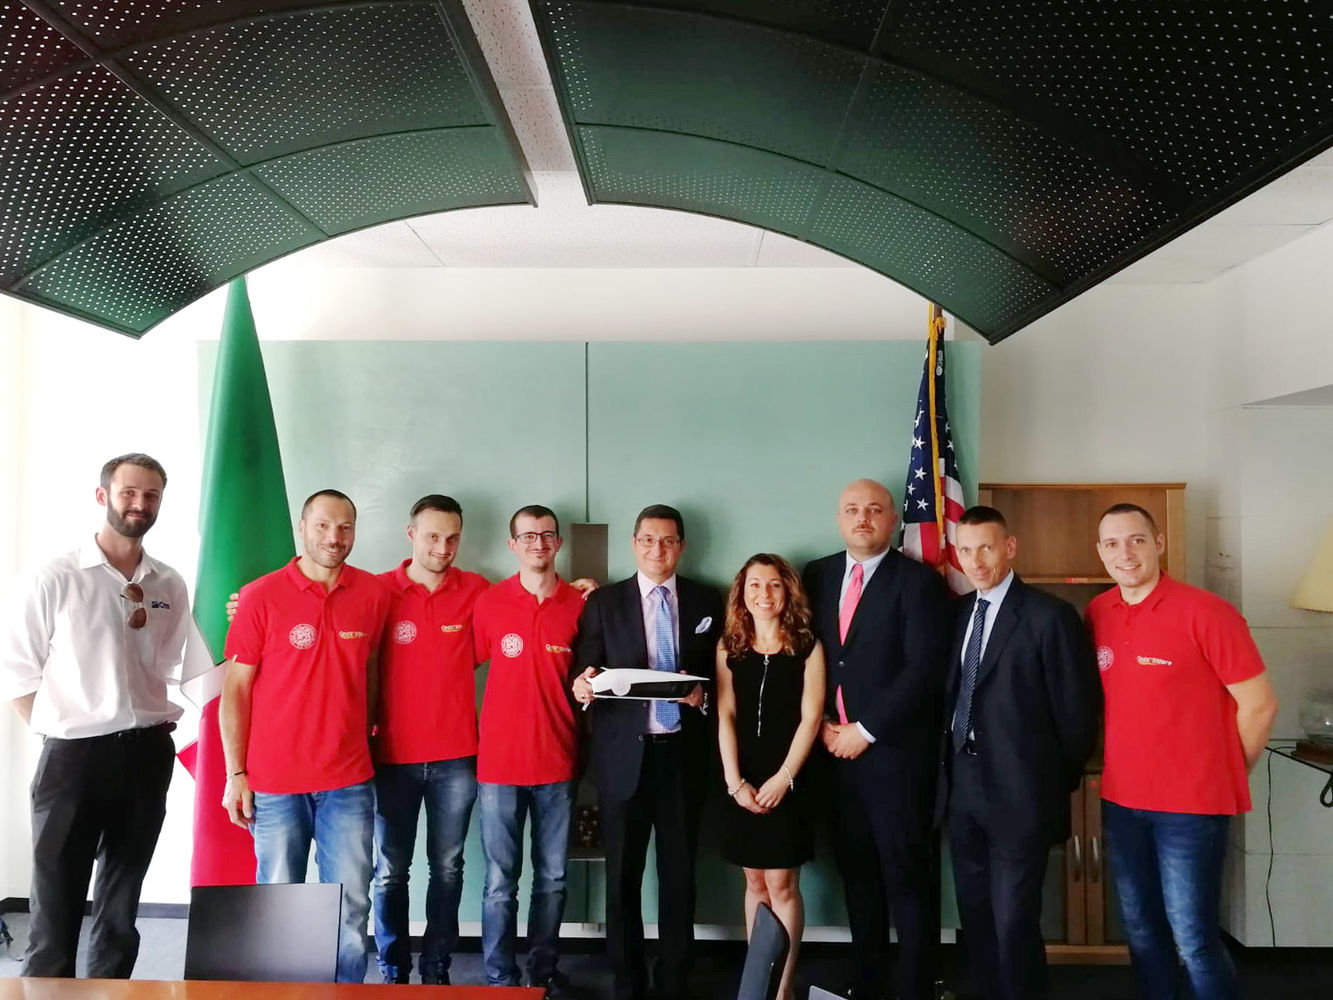 Scm Group und Cms, zusammen mit dem Team von Onda Solare, zu Besuch beim Italienischen Konsulat in Chicago